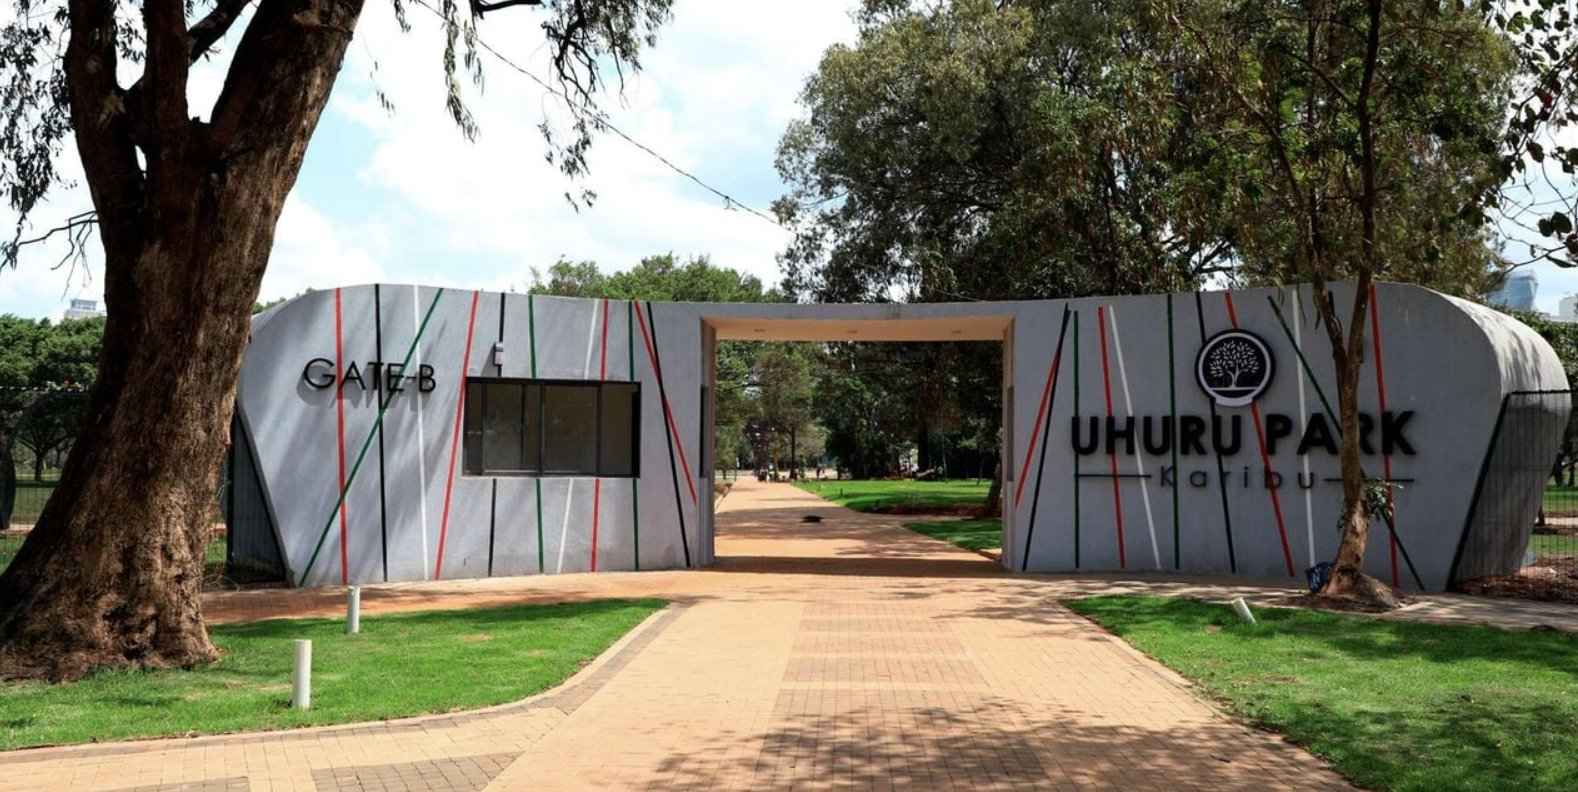 Uhuru Park, City Parks Charges Per Event